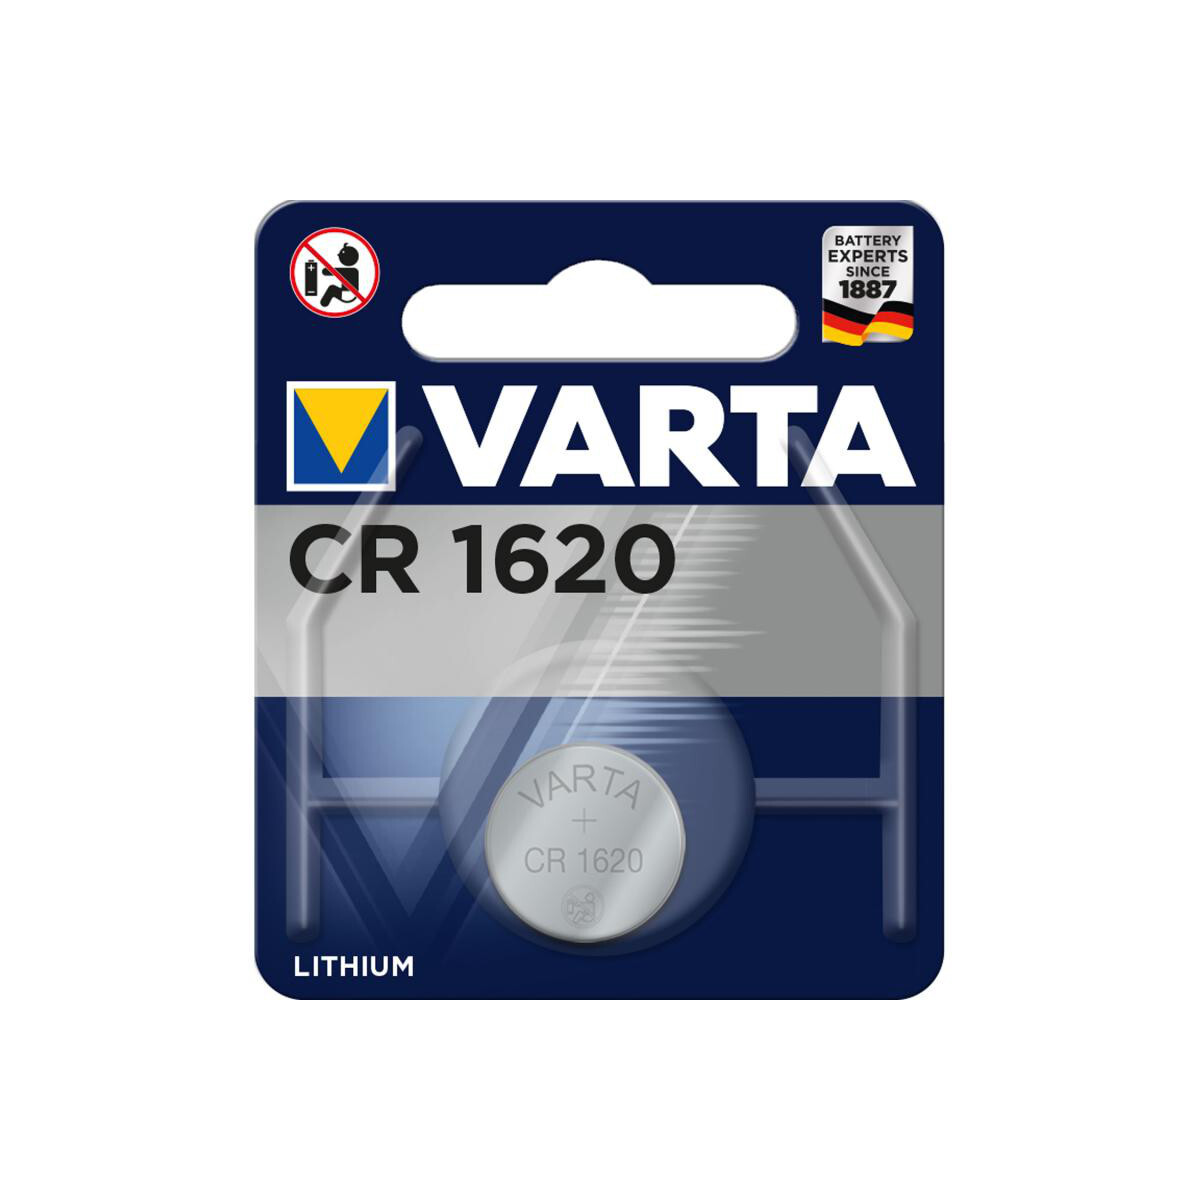 CR 1620 Varta